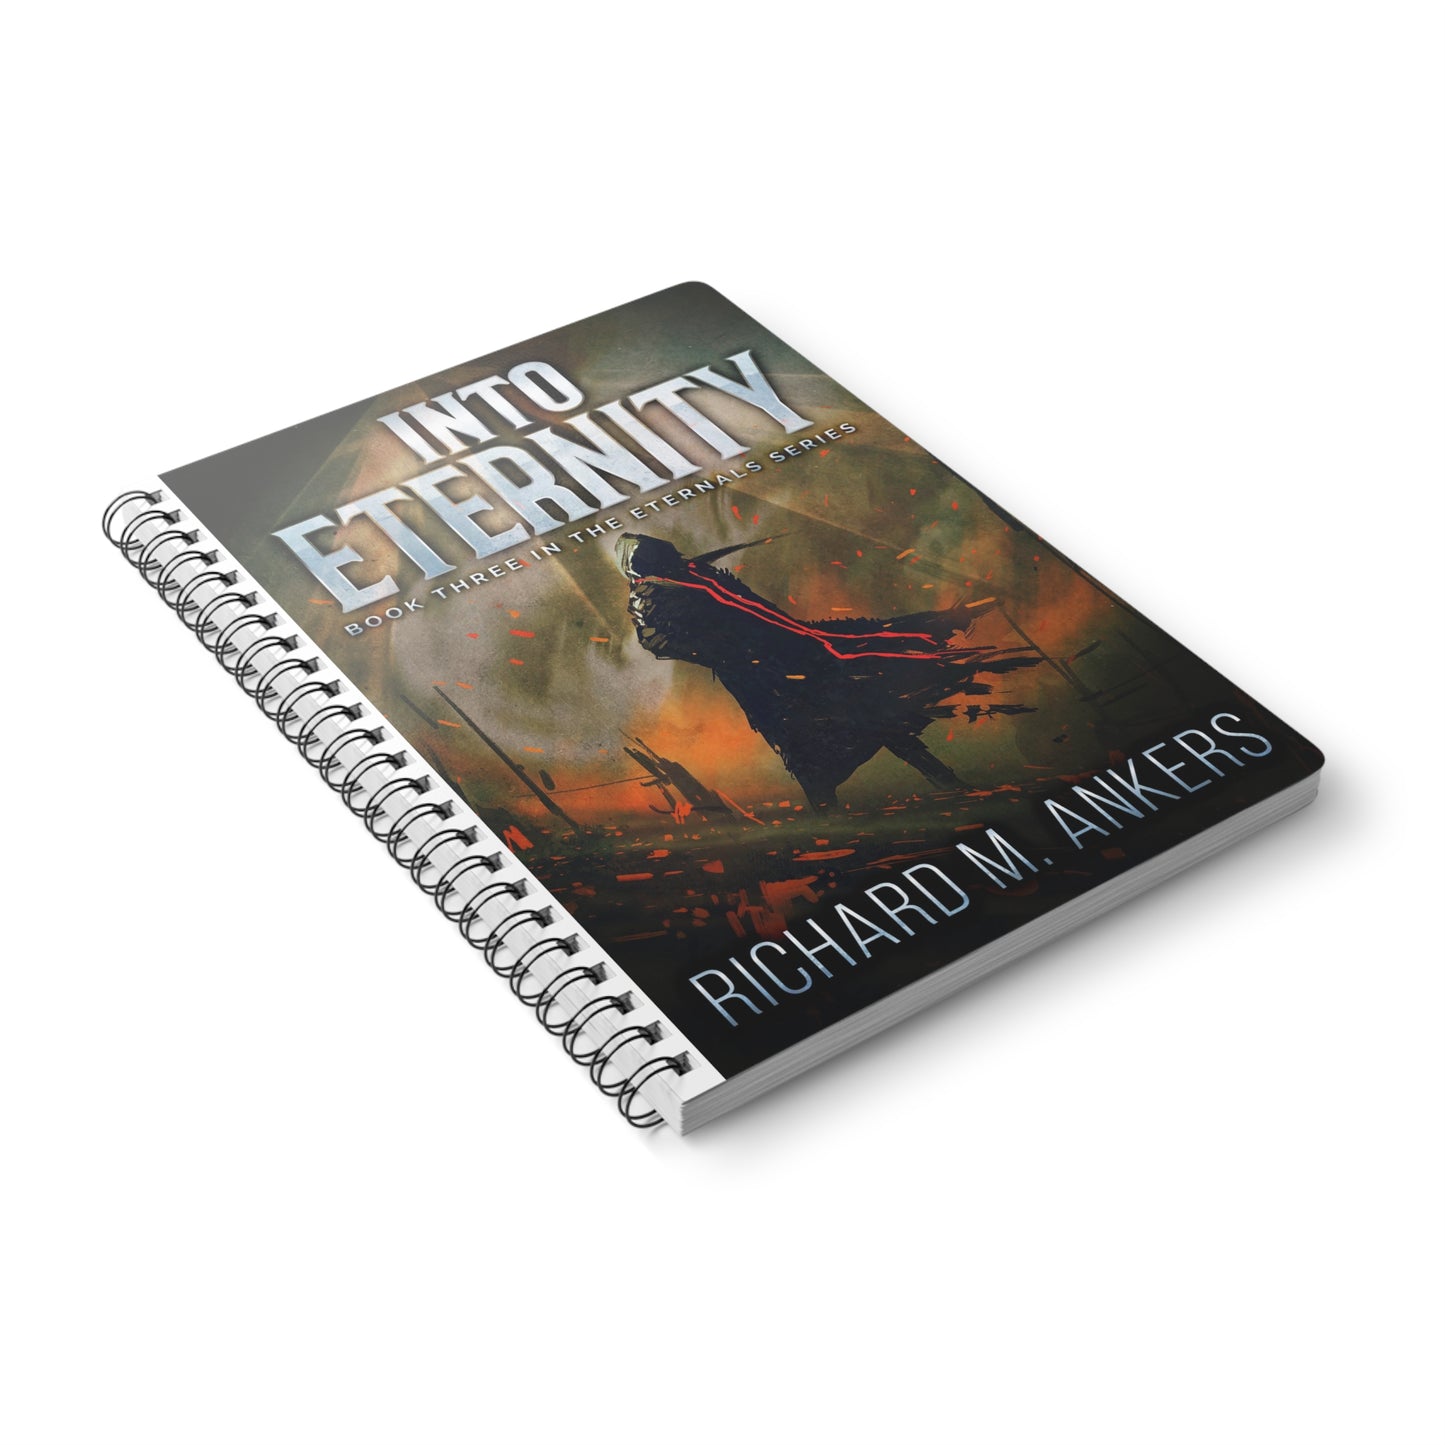 Into Eternity - A5 Wirebound Notebook